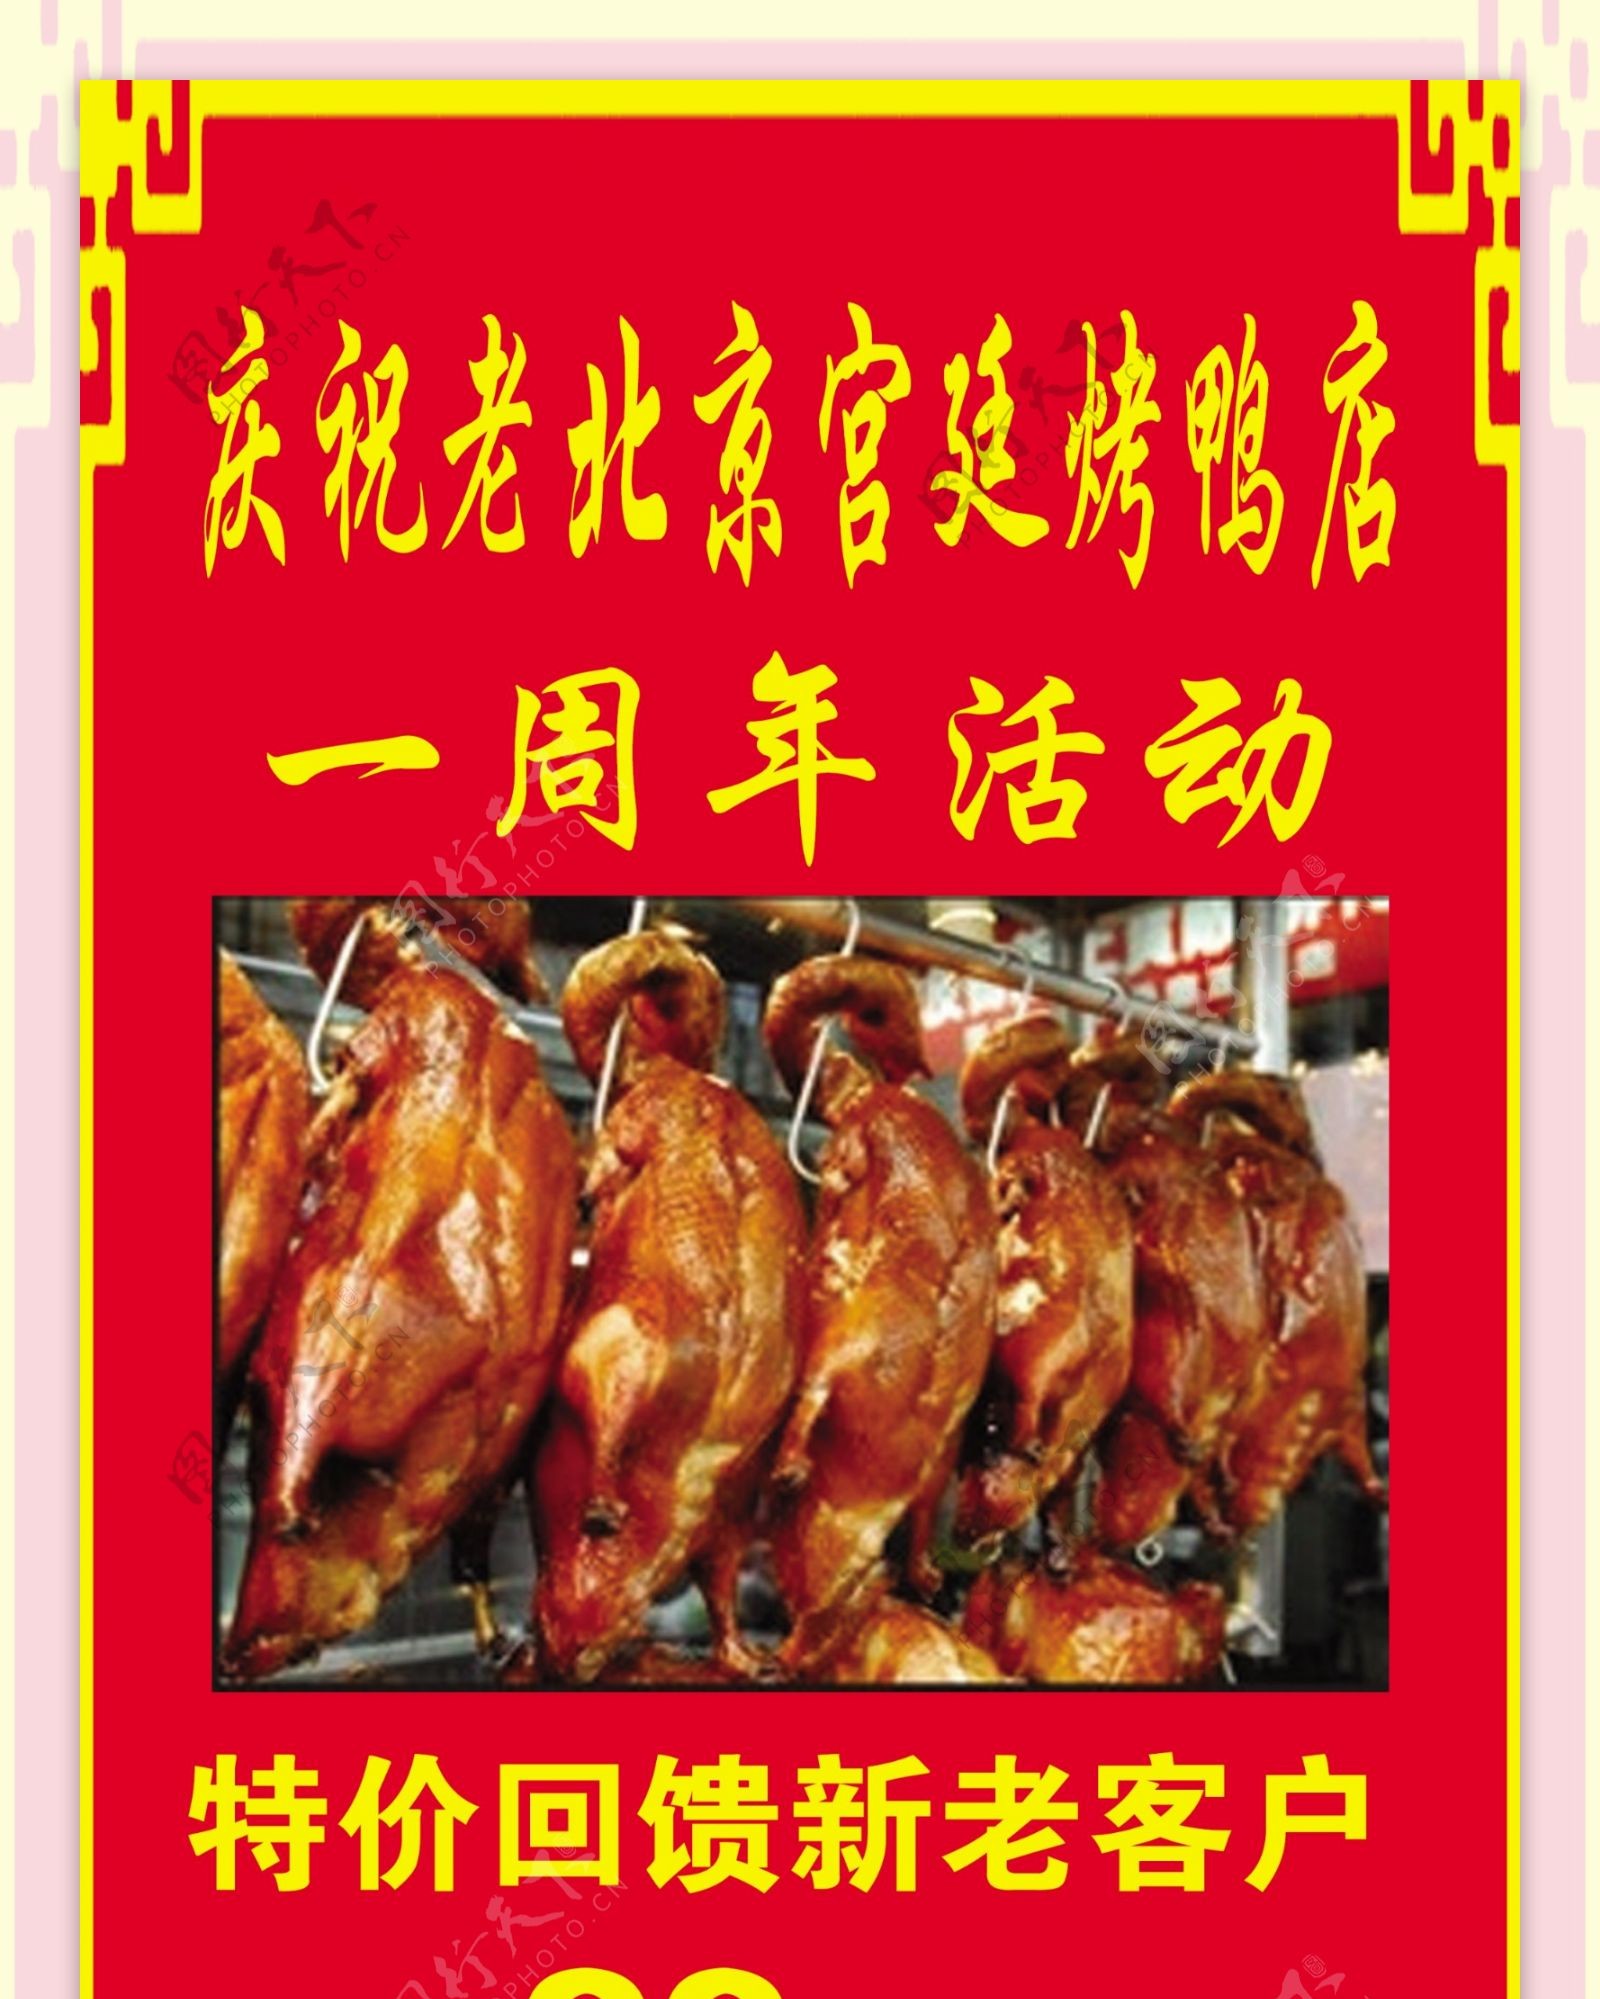 老北京宫廷烤鸭一周年活动图片